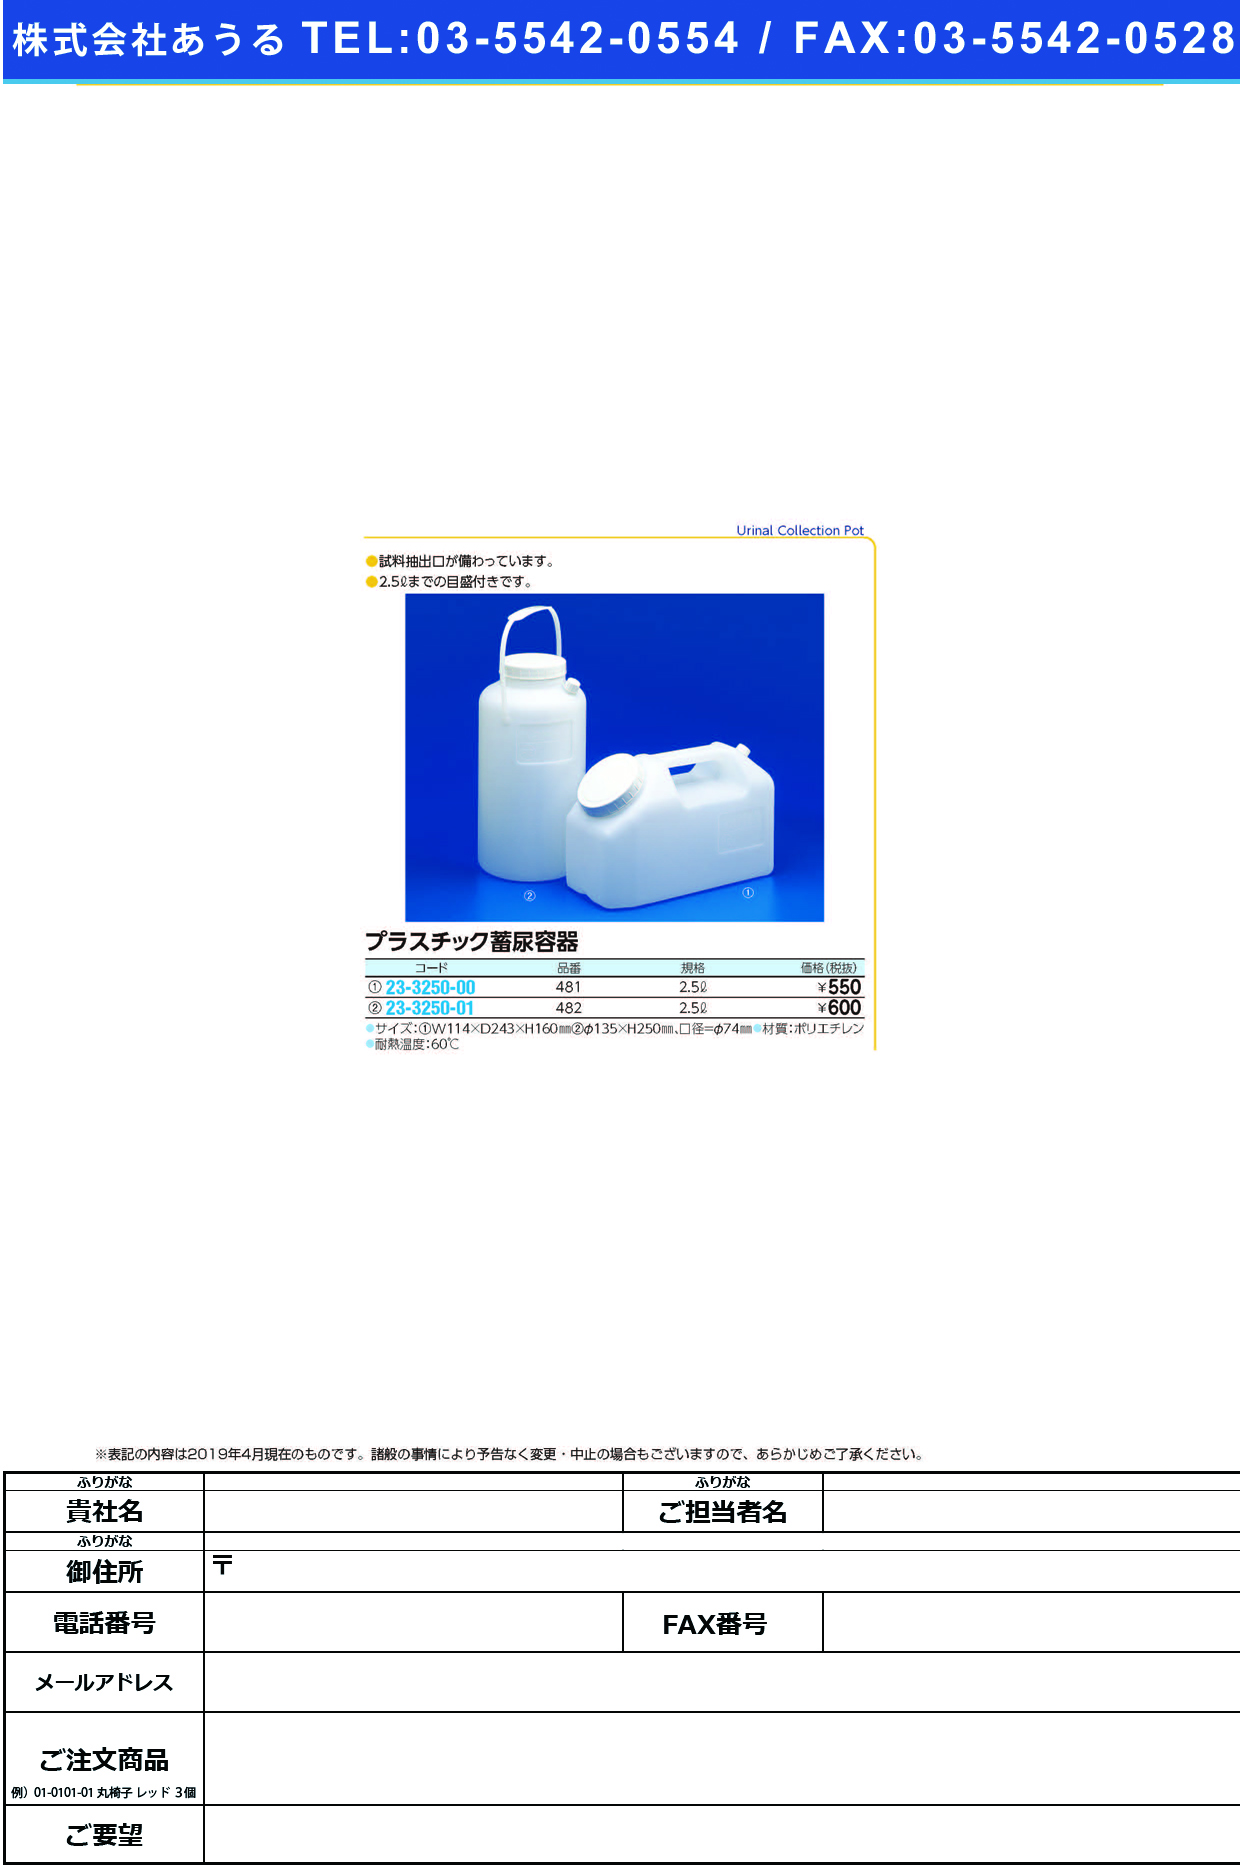 (23-3250-00)プラスチック蓄尿容器 481(2.5L) ﾌﾟﾗｽﾁｯｸﾁｸﾆｮｳﾖｳｷ【1個単位】【2019年カタログ商品】